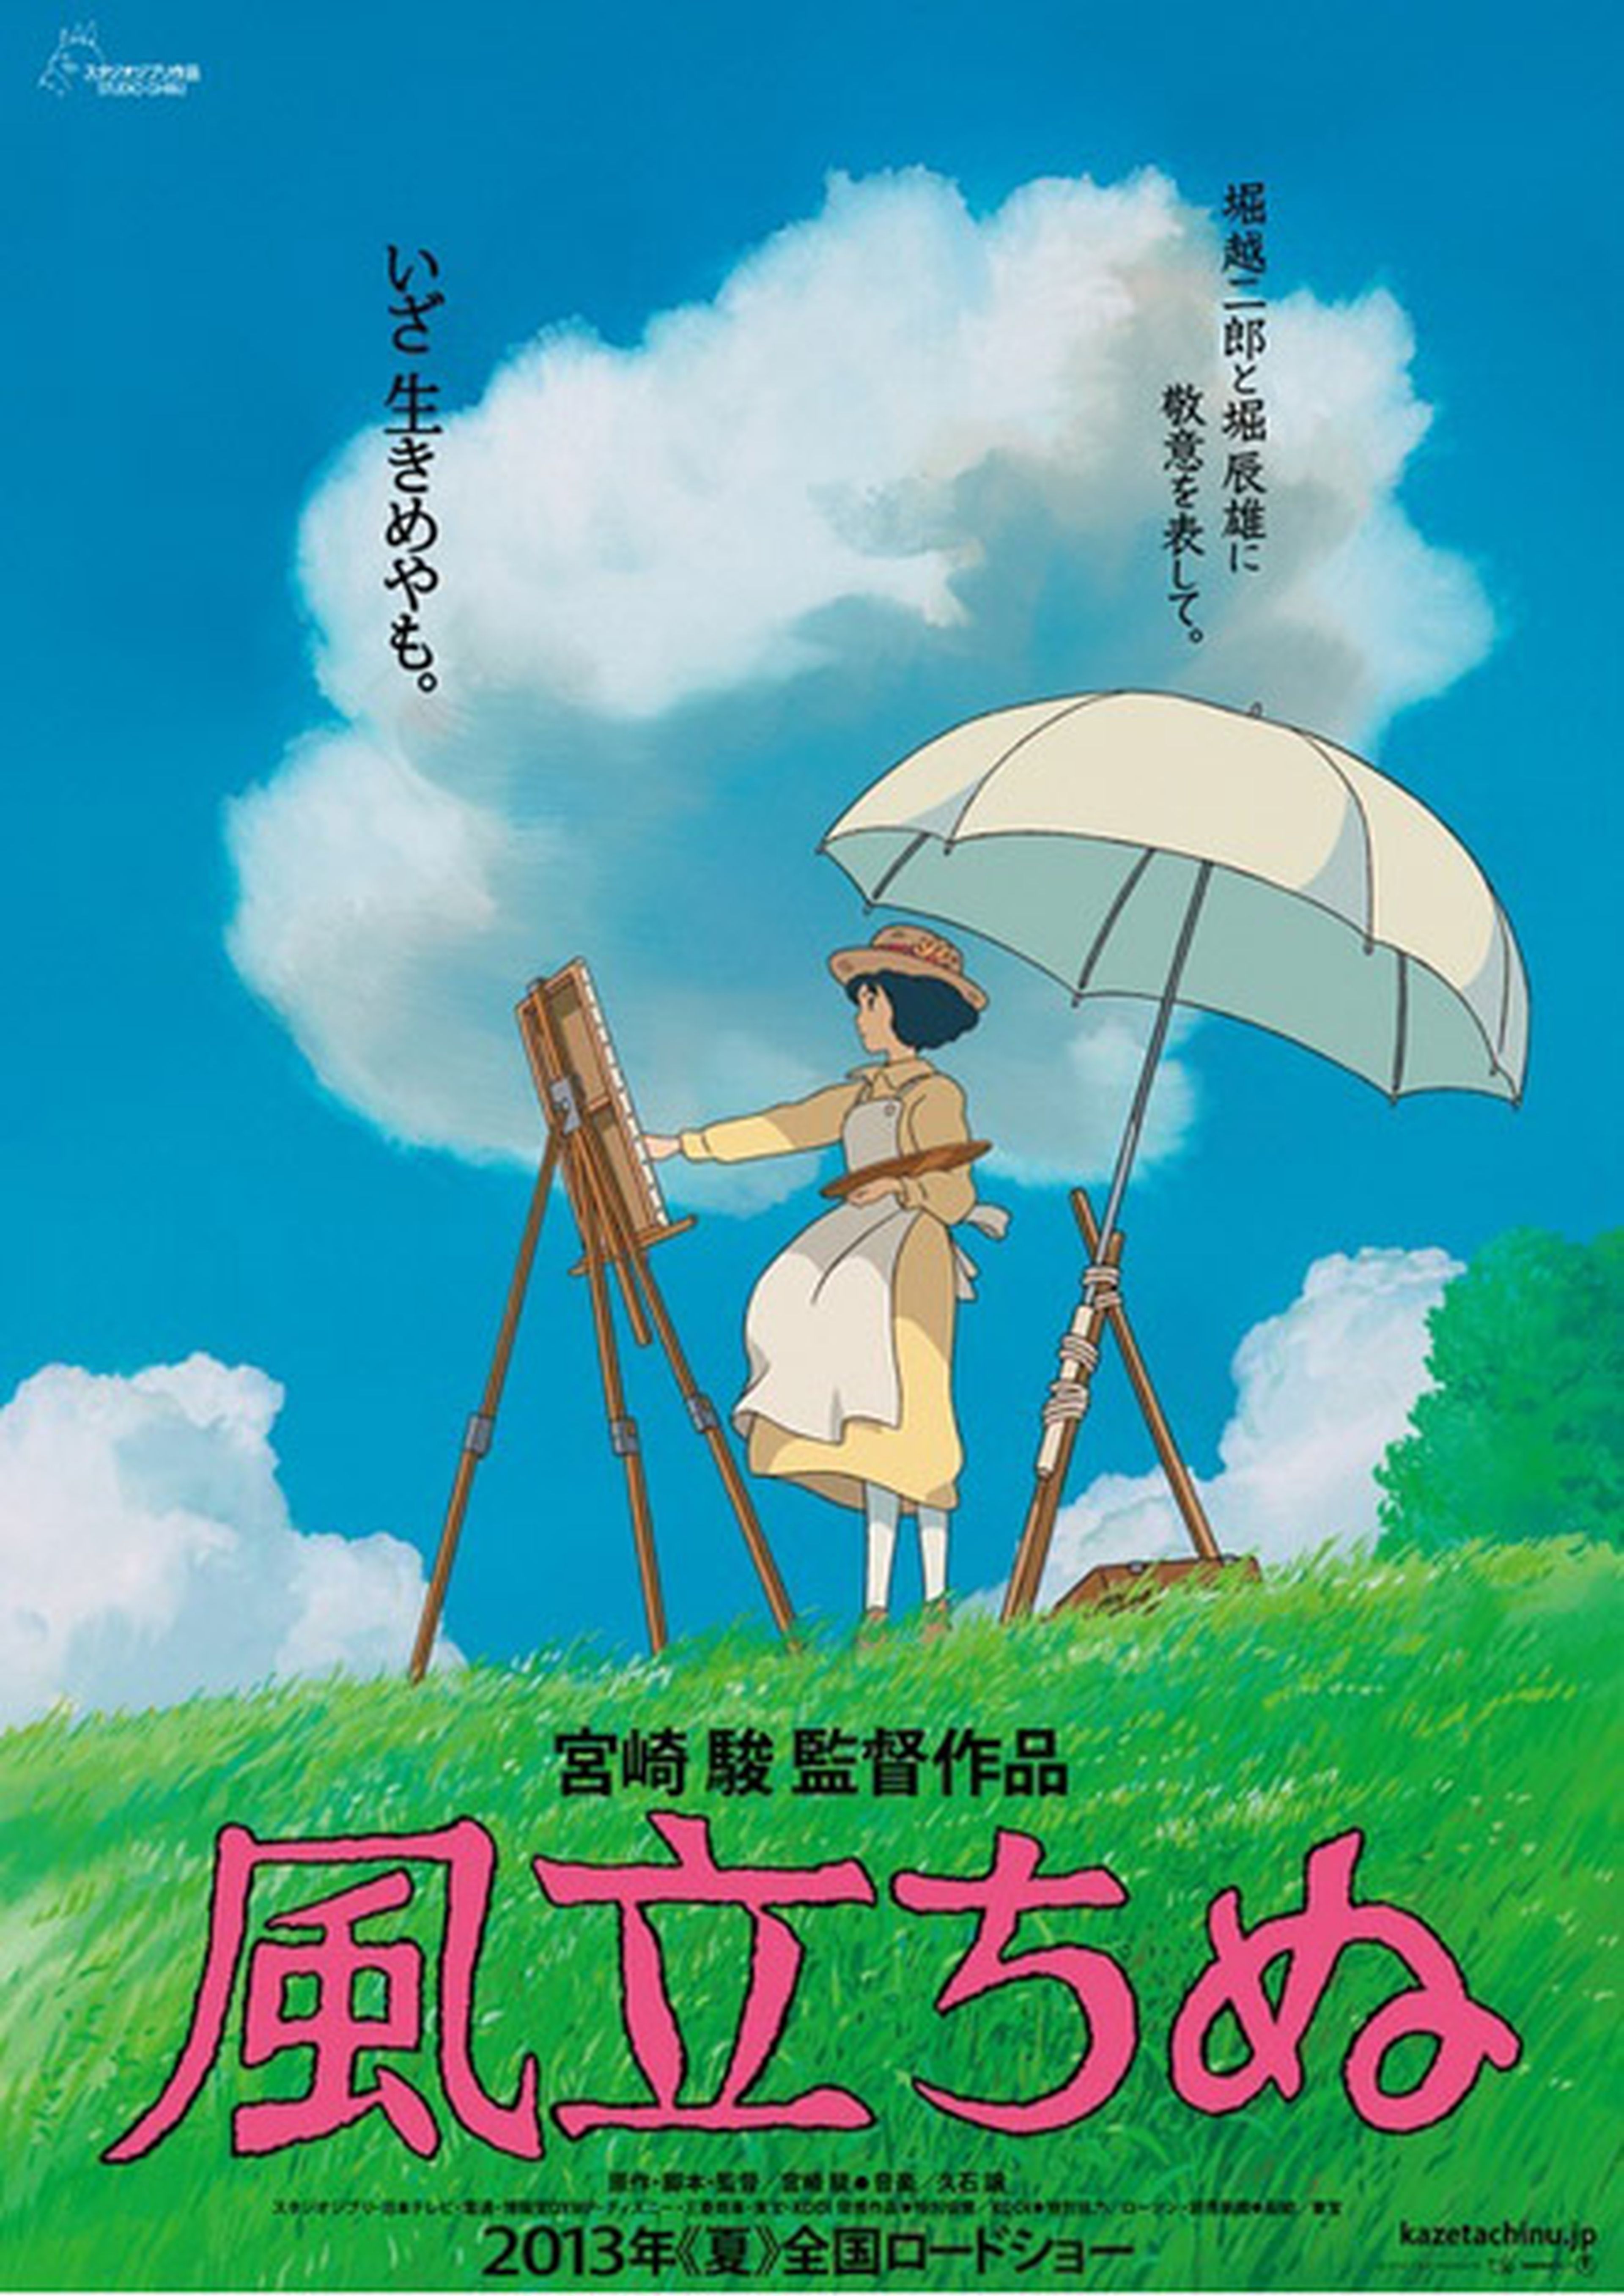 La nueva película de Miyazaki se estrena en julio